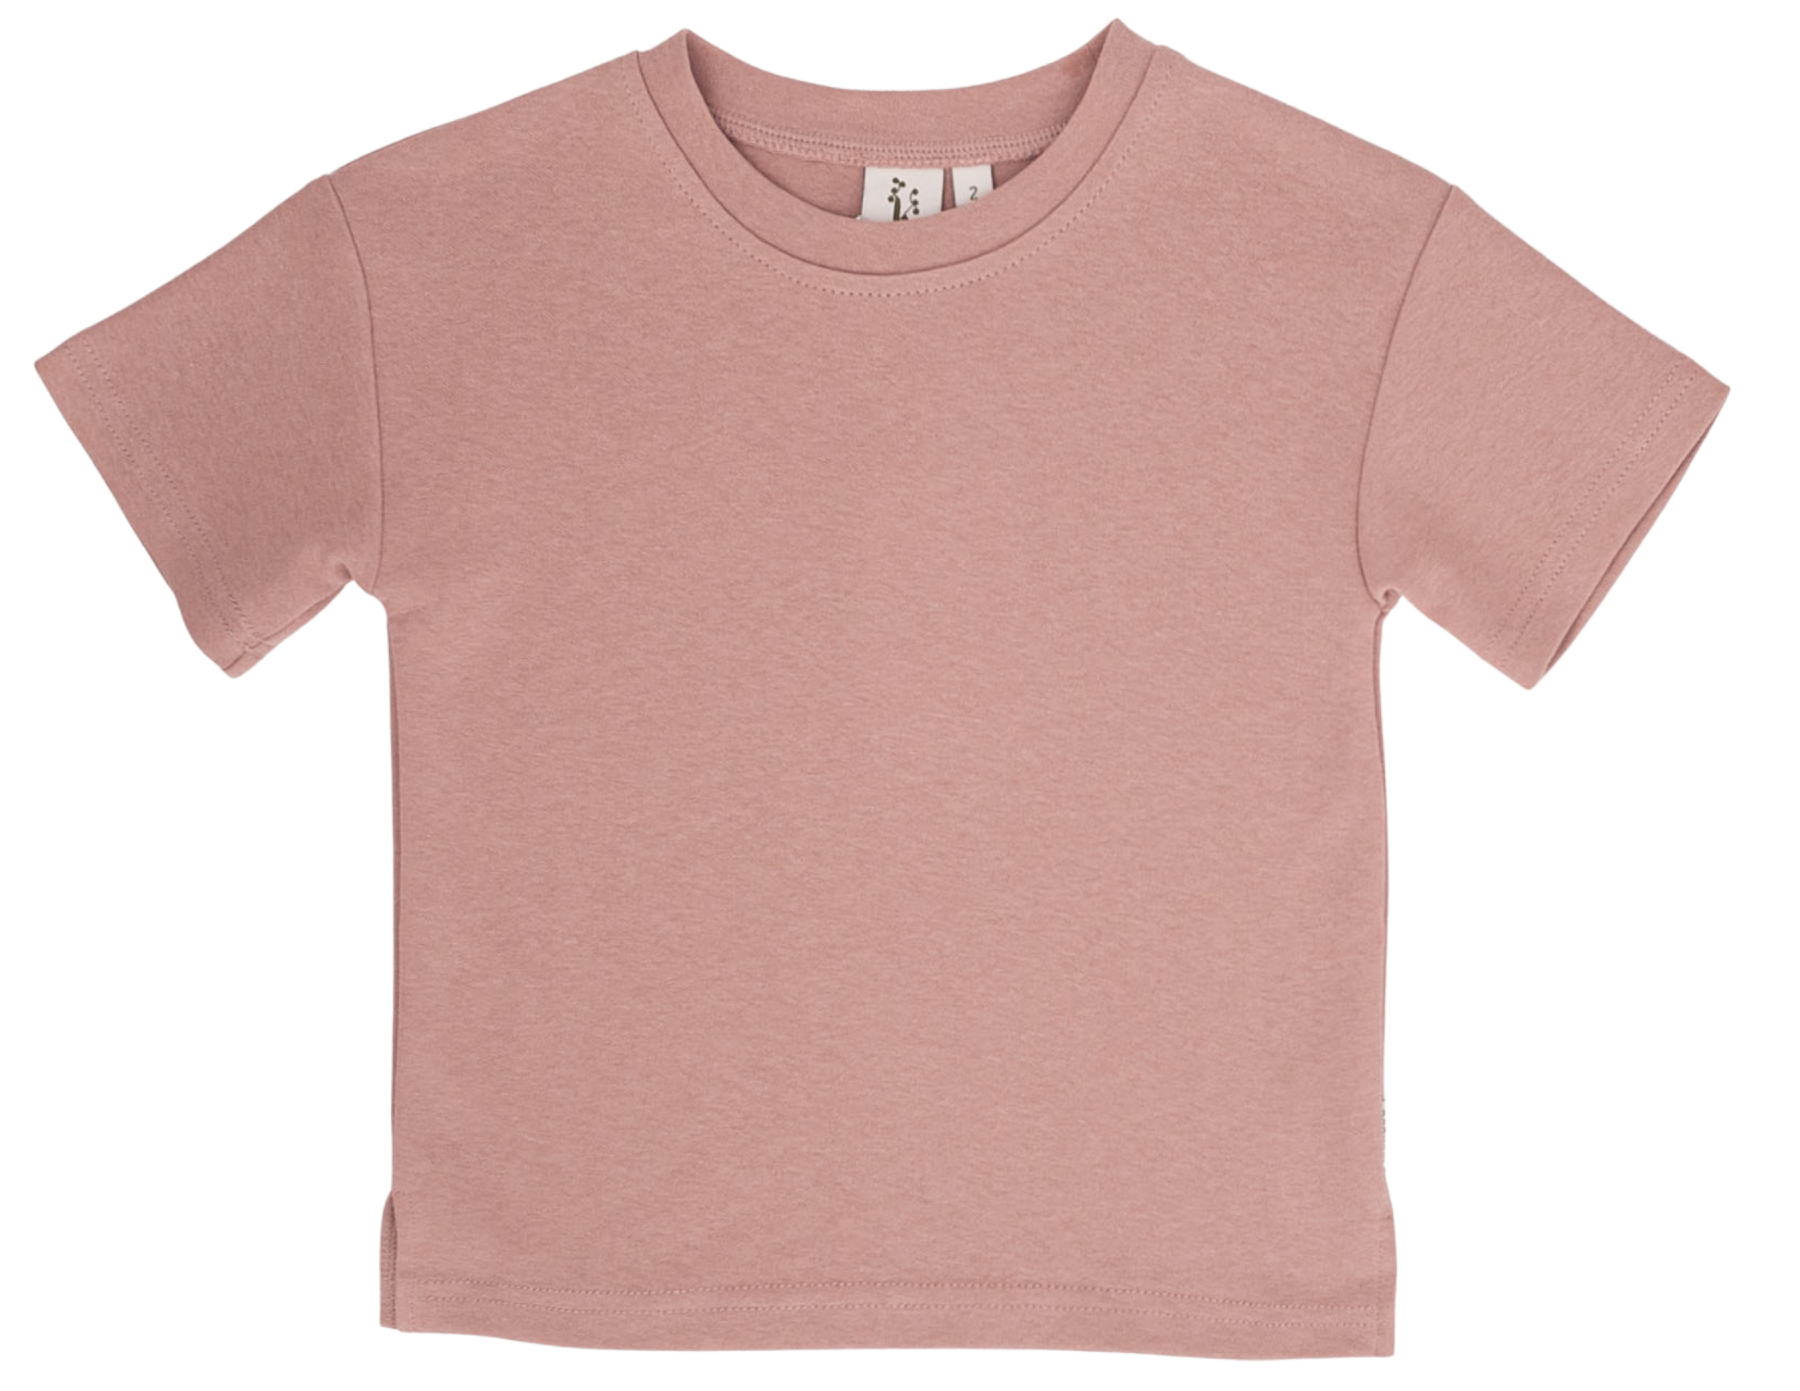 Gaia Unisex T-shirt - Coral